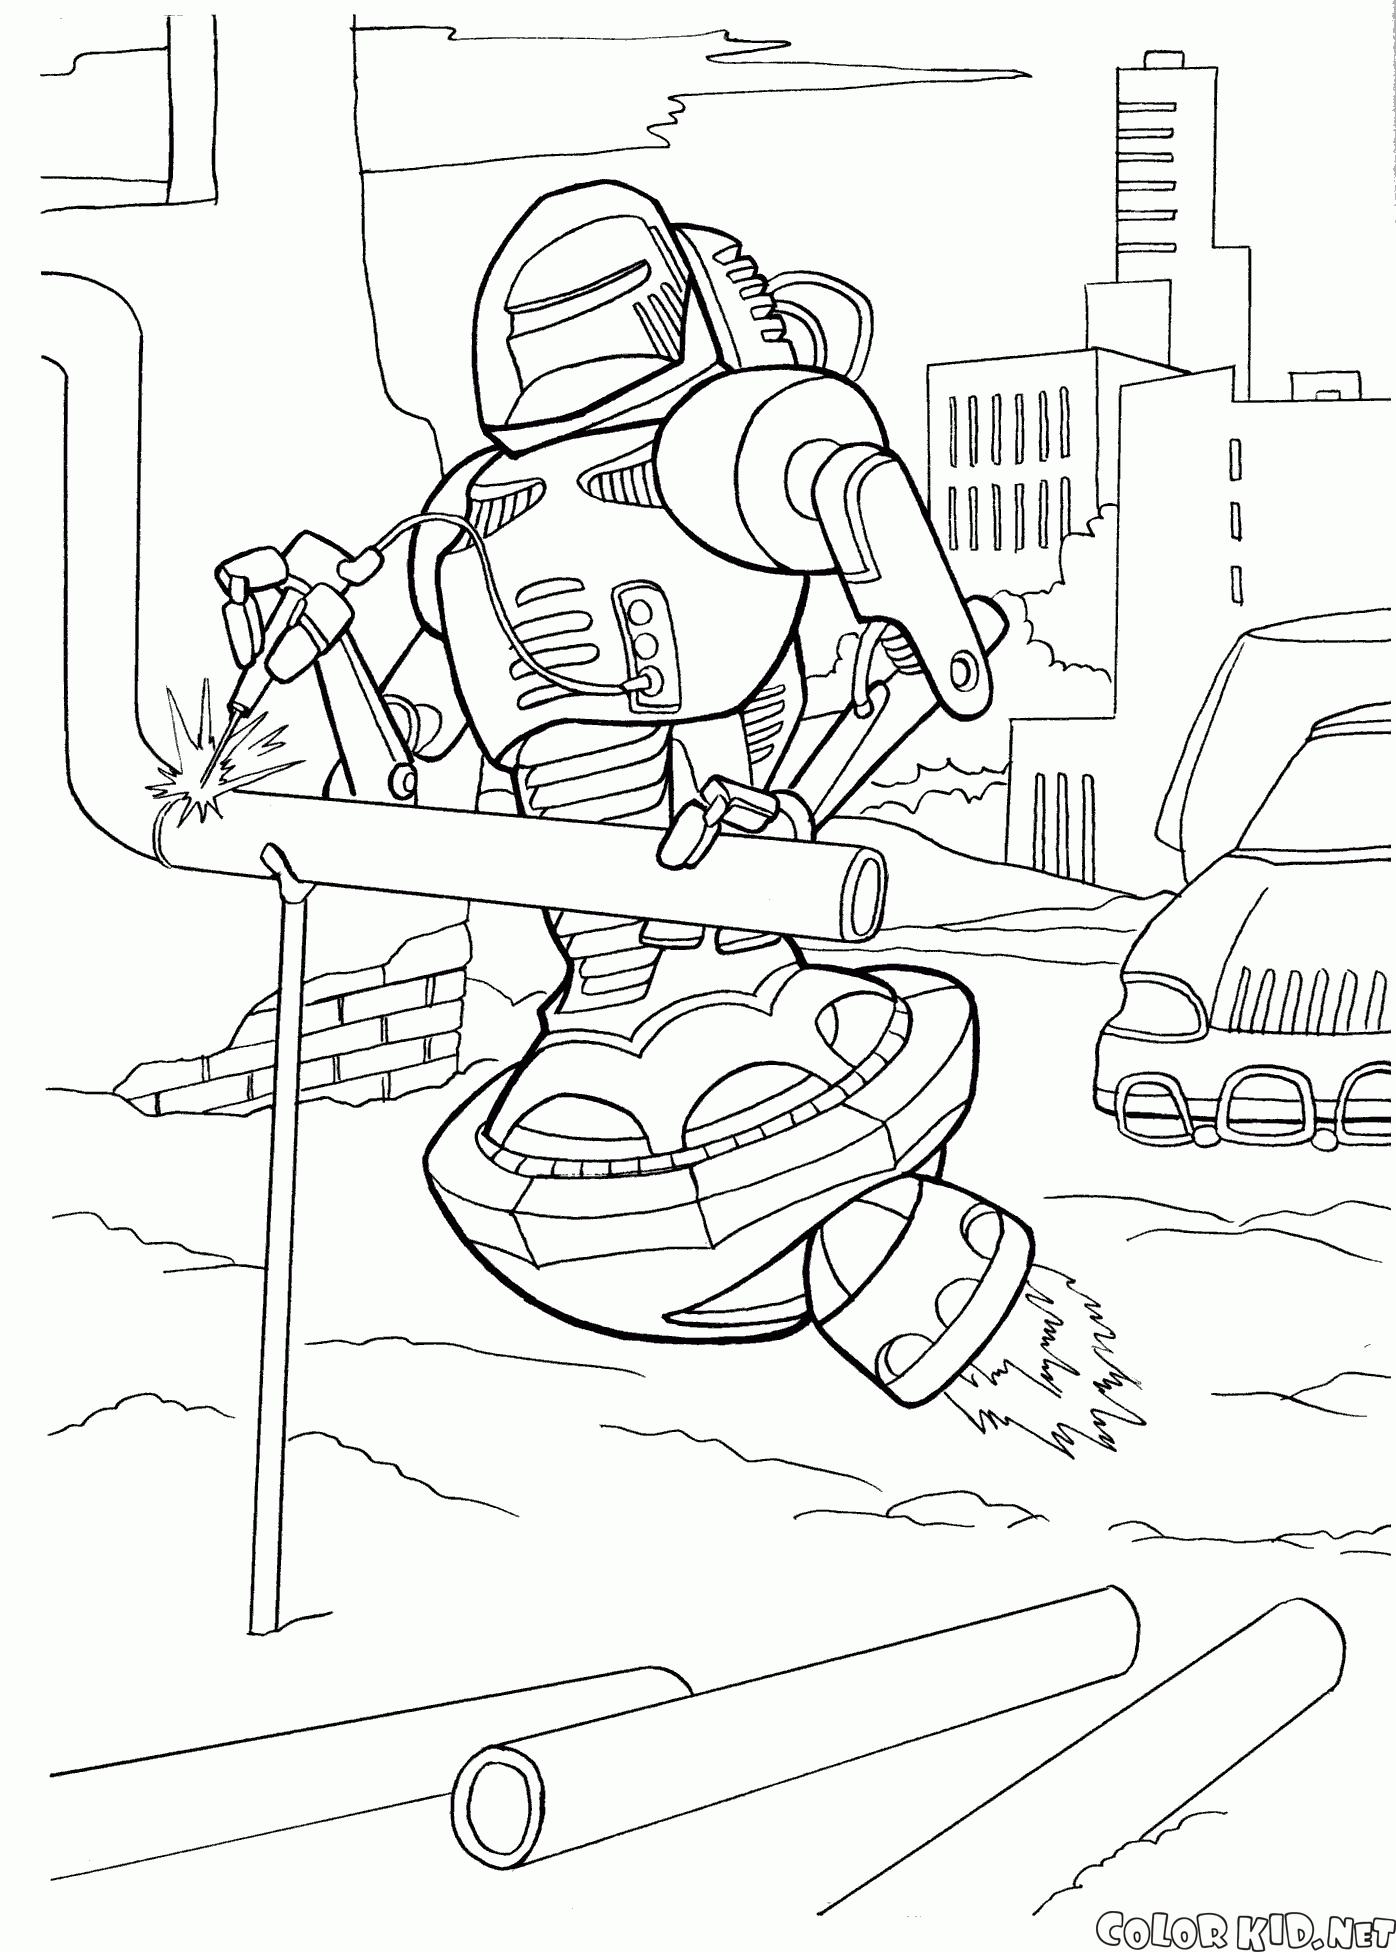 Robot welder